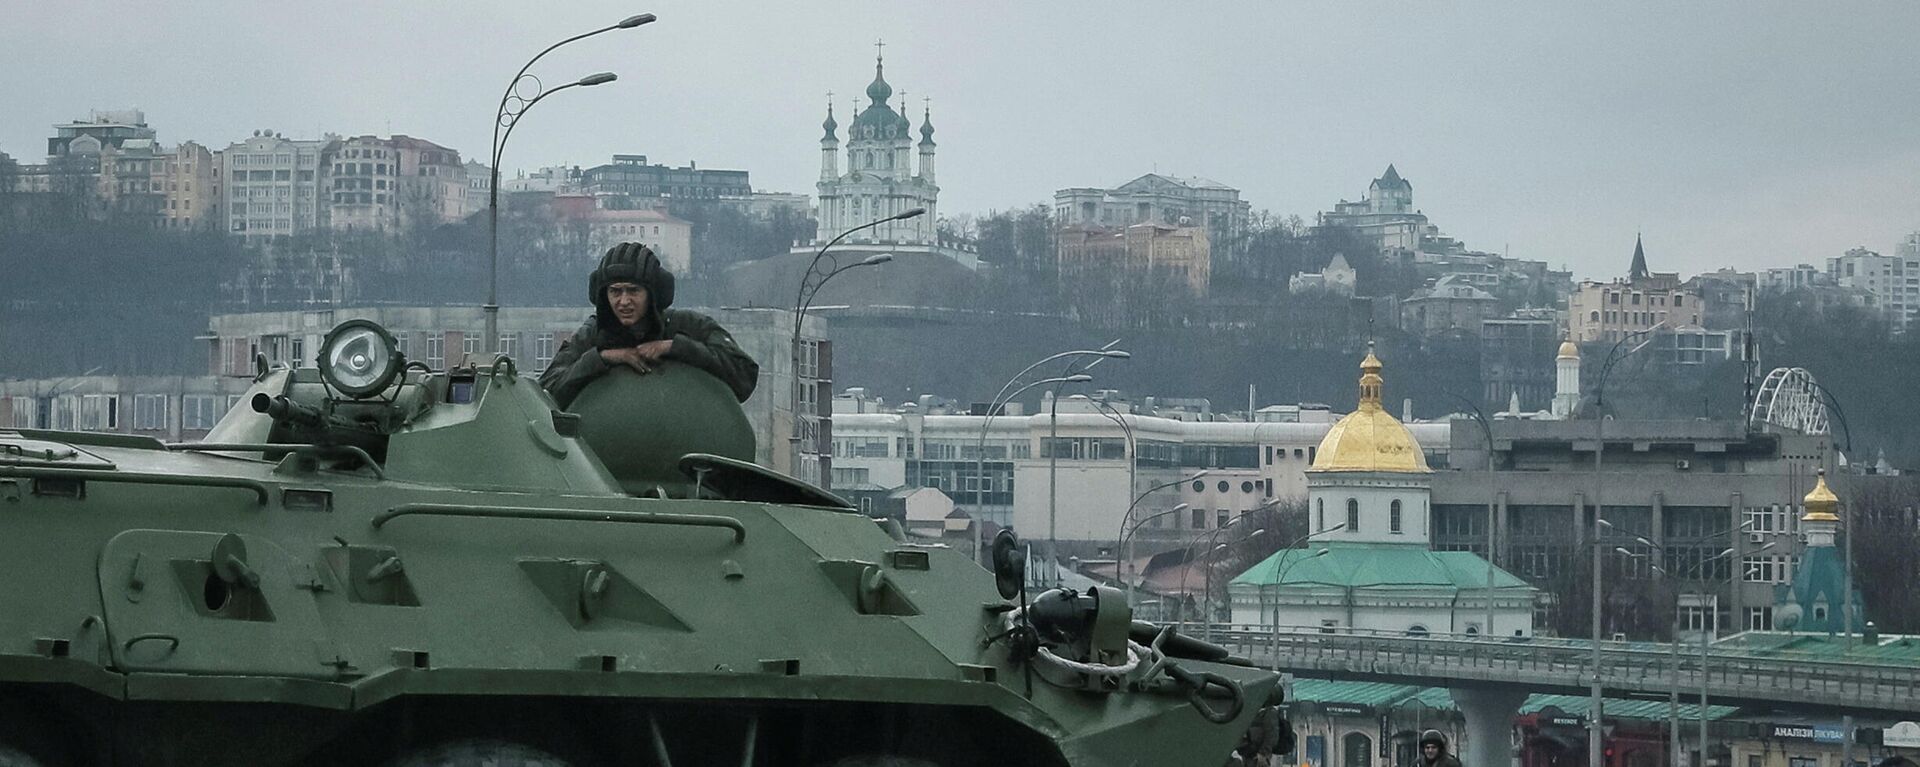 Украинские военнослужащие на мосту в Киеве, 25 февраля 2022 года - Sputnik Латвия, 1920, 25.02.2022